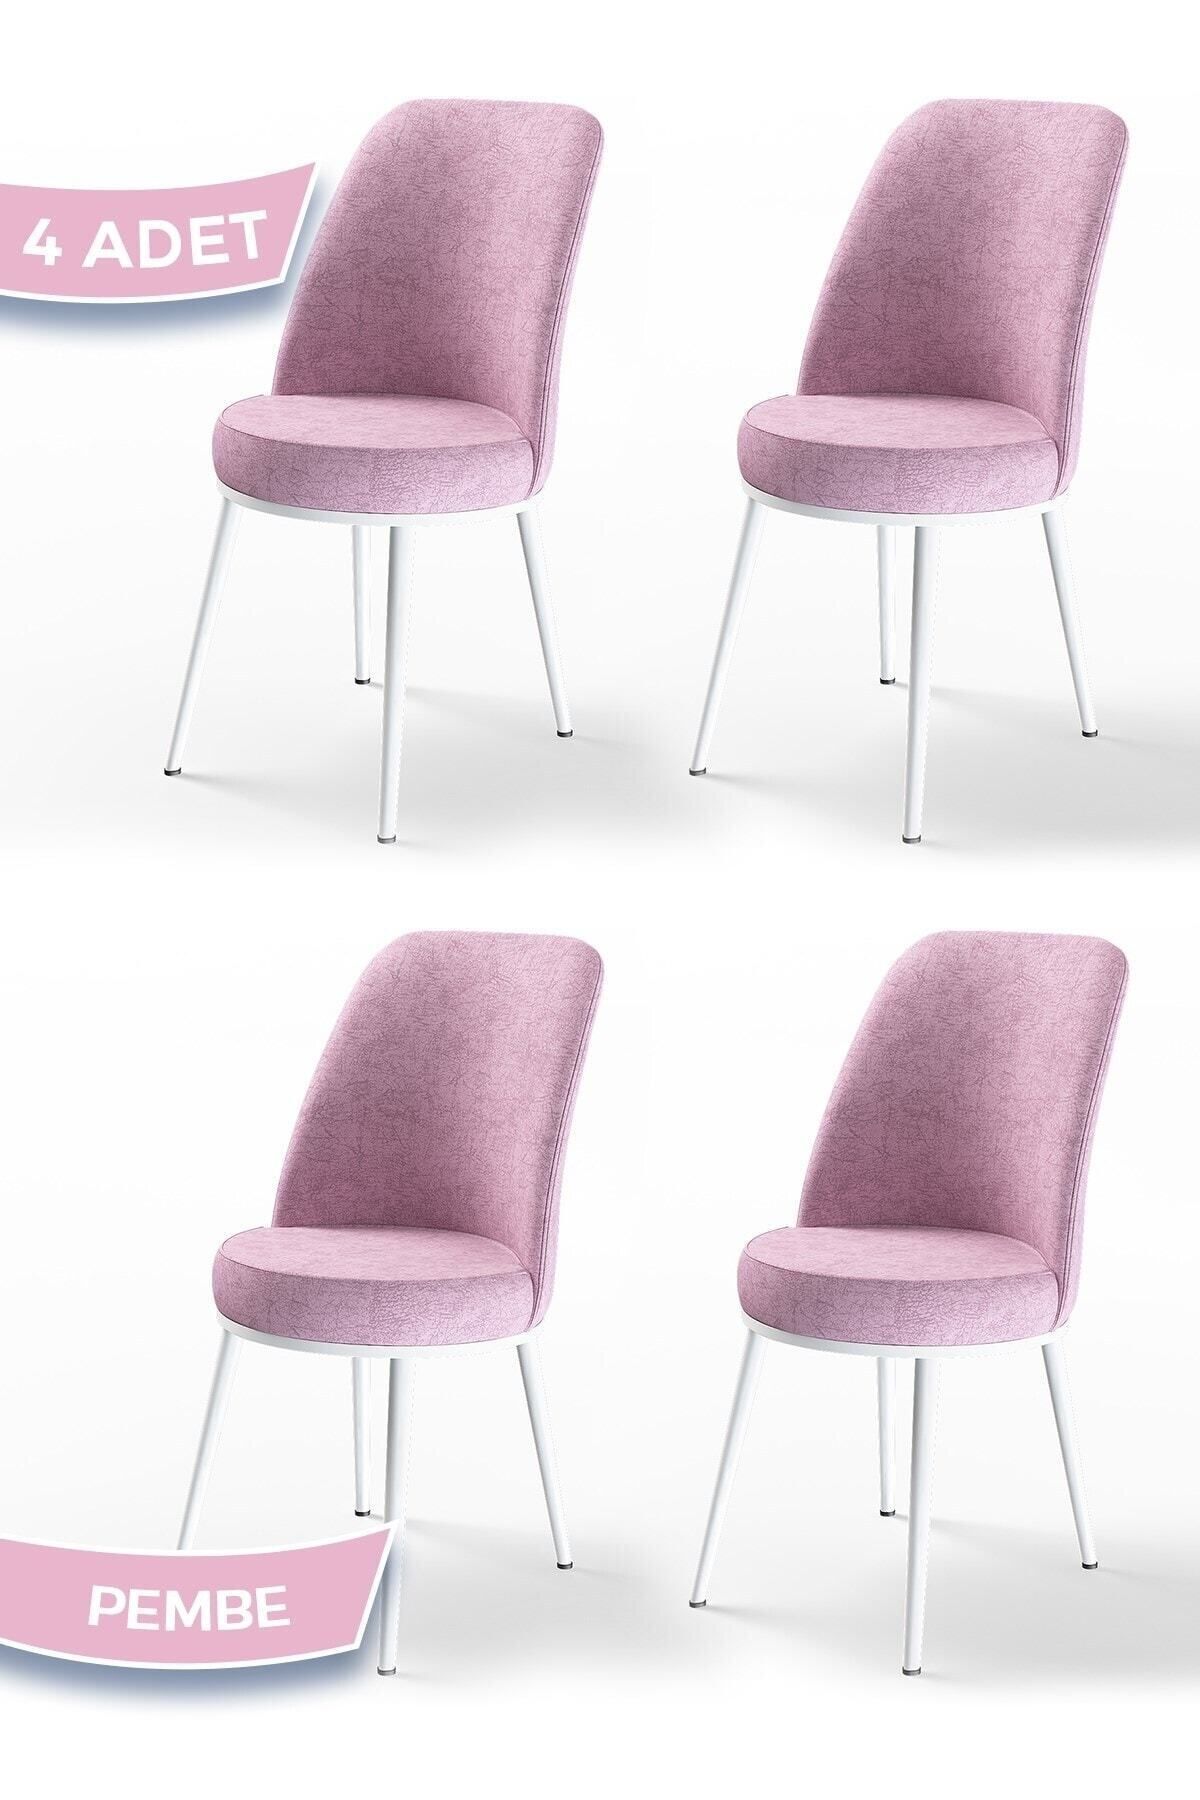 Canisa Dexa Serisi, Üst Kalite Mutfak Sandalyesi,4 Adet Pembe Sandalye, Metal Beyaz Iskeletli